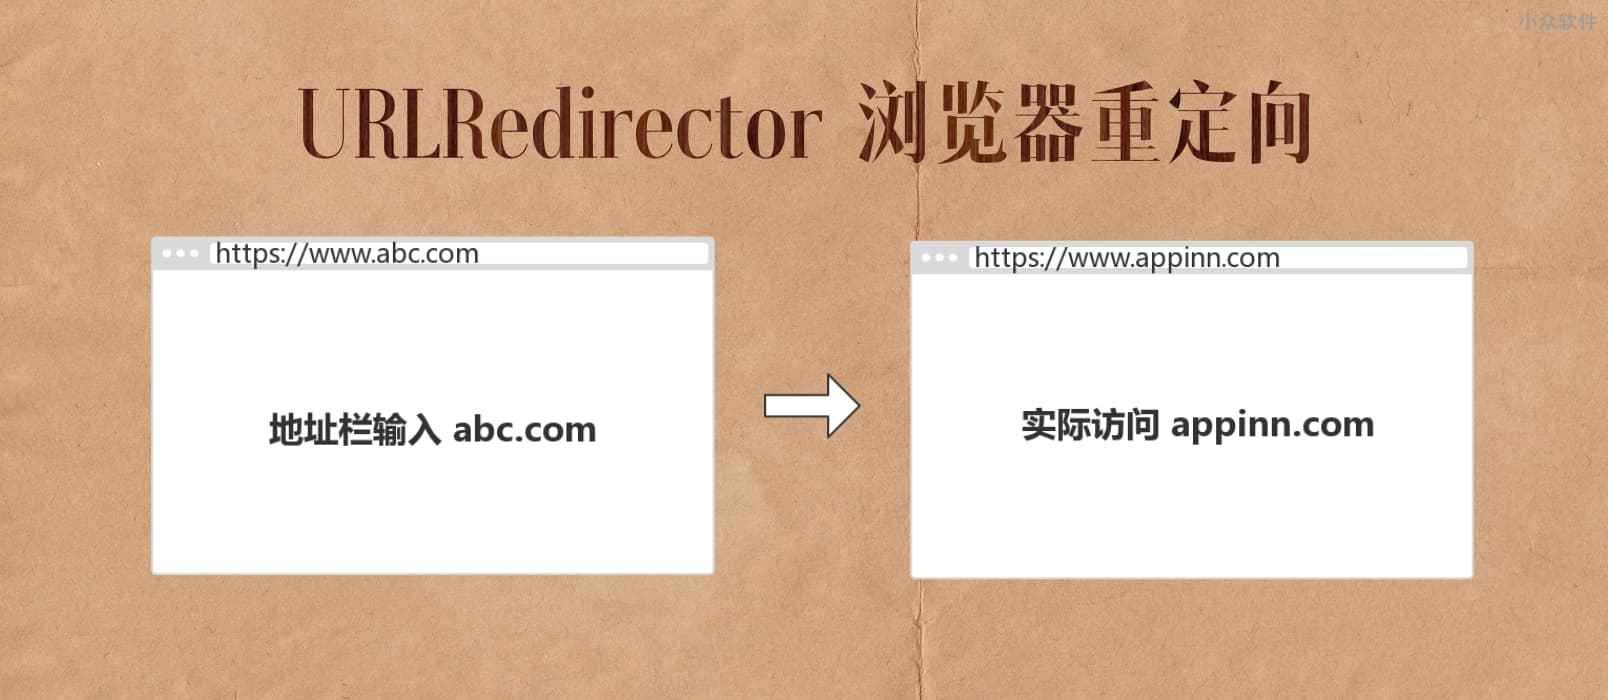 URLRedirector - 网址重定向，解决网站打开慢的顽疾 [Chrome/Firefox/Edge] 1